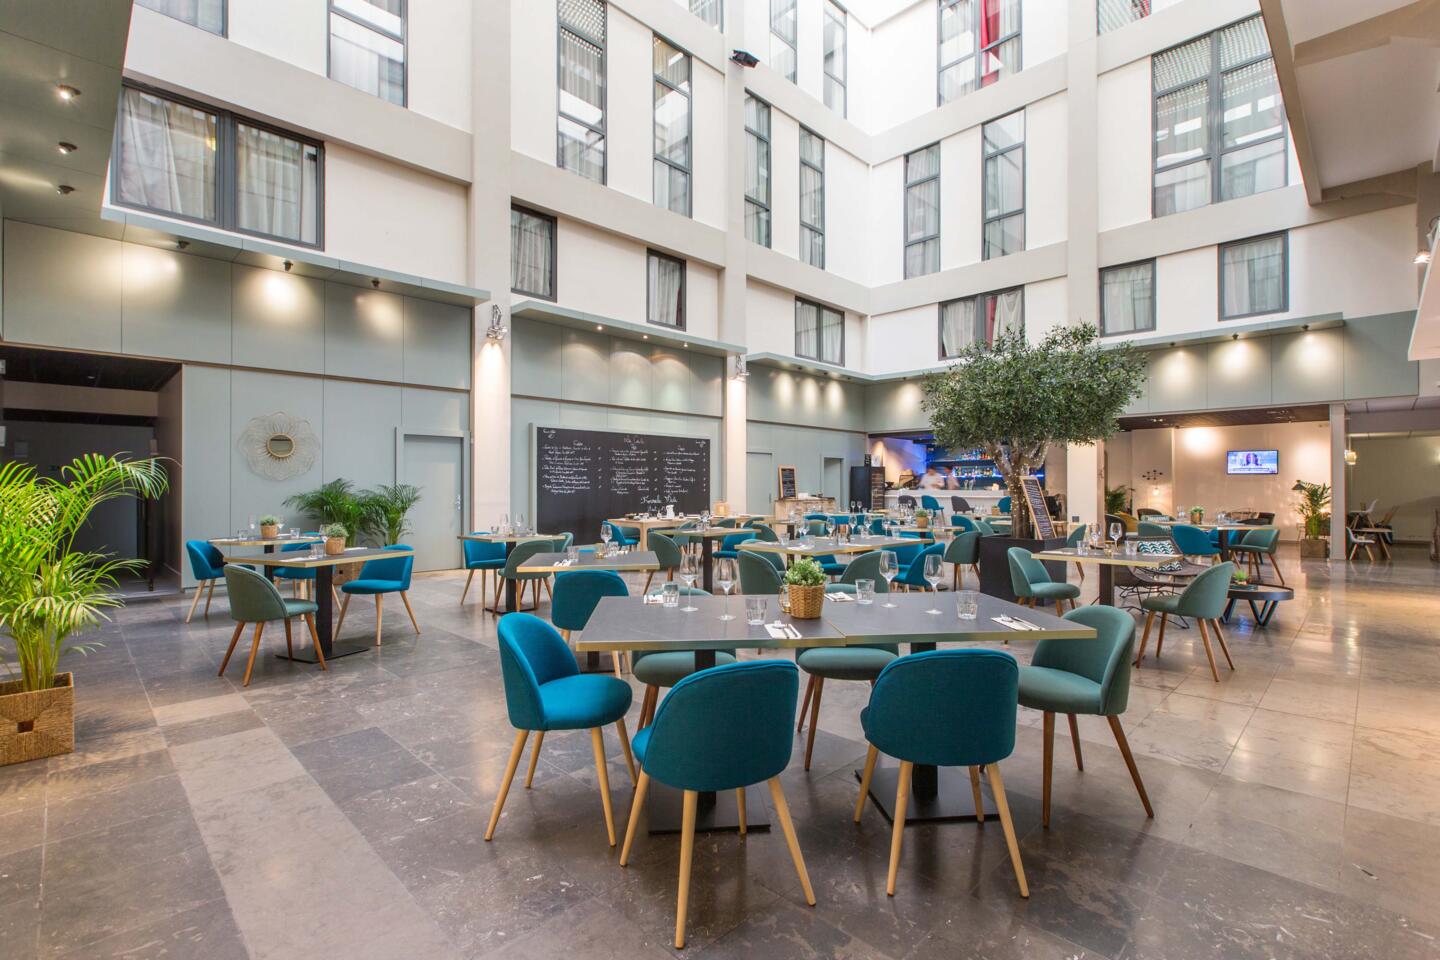 Vue intérieure du Restaurant Bistrot City Lyon Part-Dieu, décoration contemporaine avec des chaises en tissu bleu canard, tables en bois, et plantes vertes, ambiance lumineuse et accueillante.